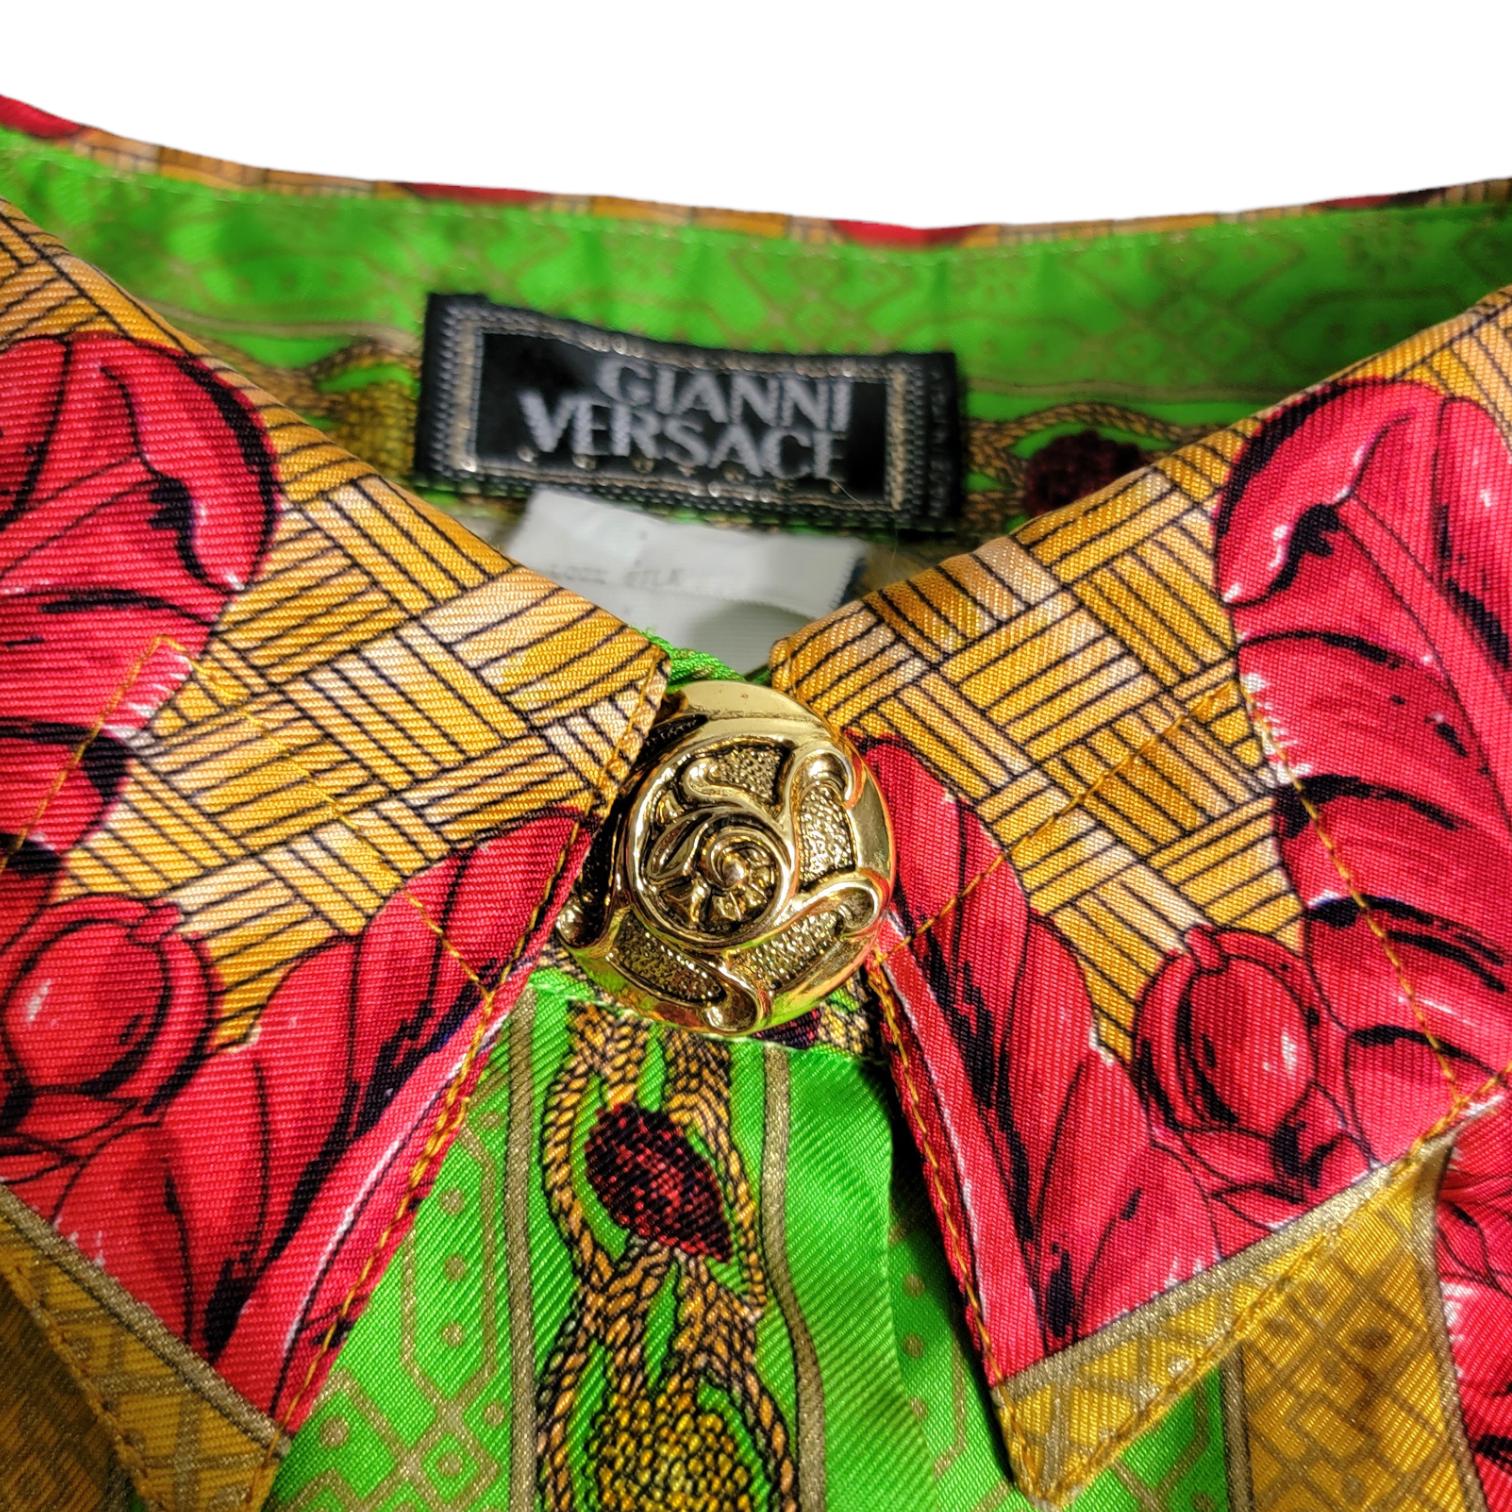 Gianni Versace Marco Polo Seidenhemd Chinesischer Kaiser mit Pfauen 1992  11